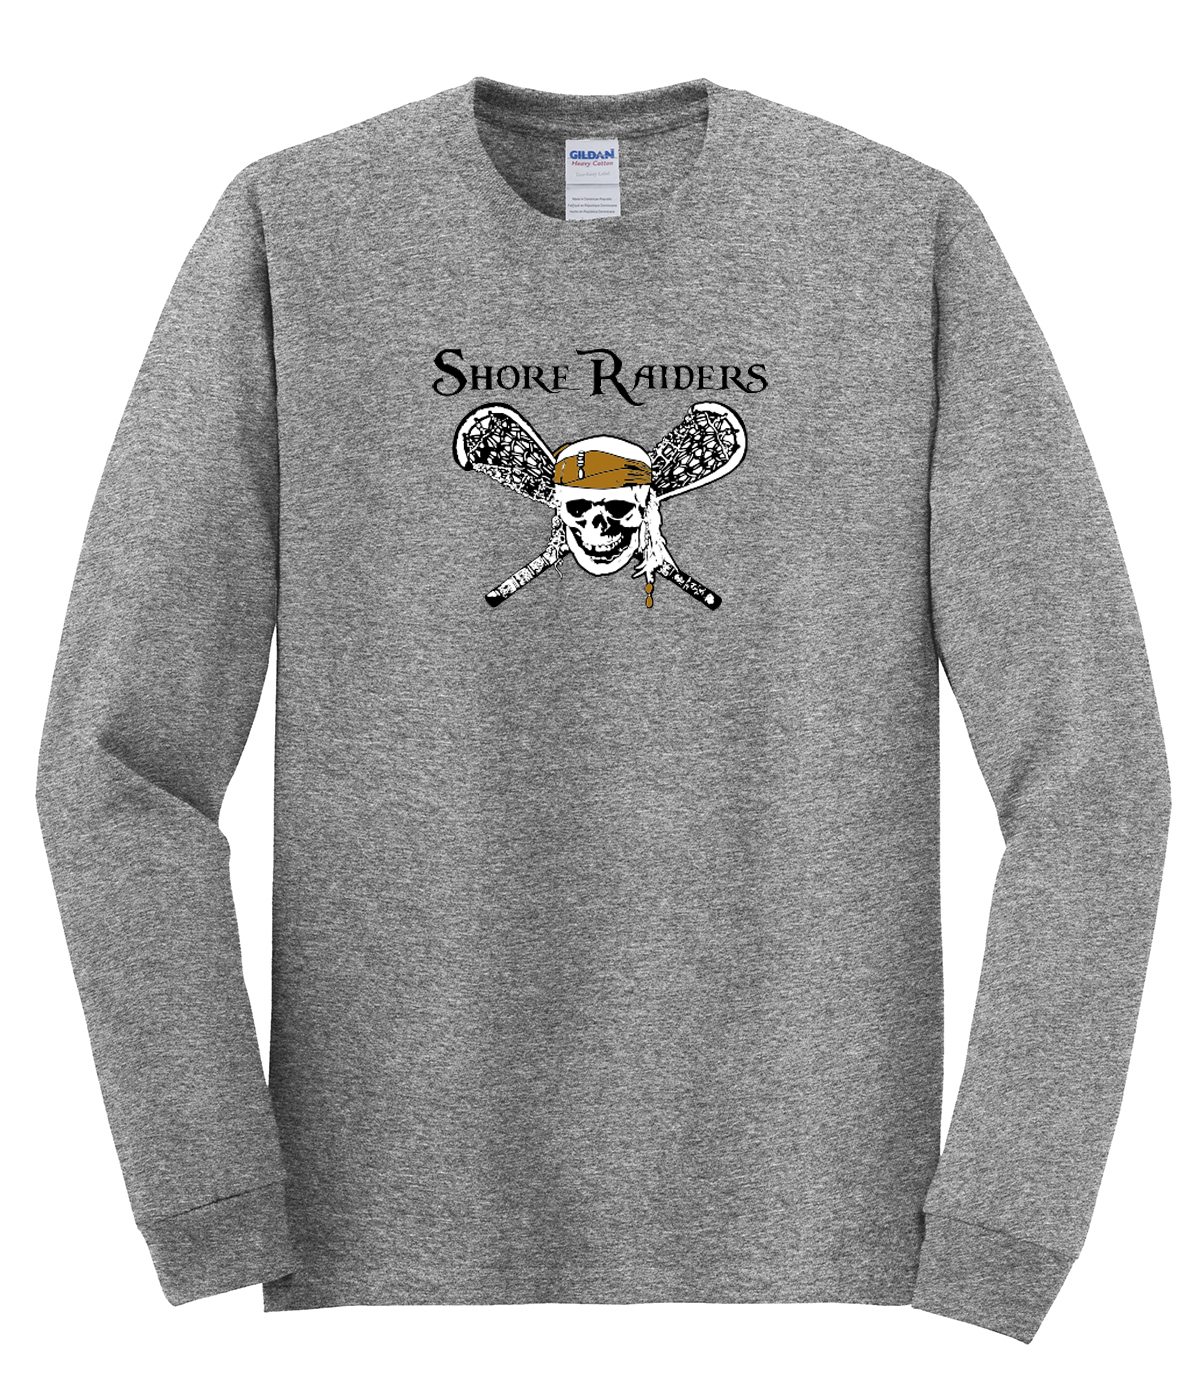 Shore Raiders Lacrosse Cotton Long Sleeve Shirt